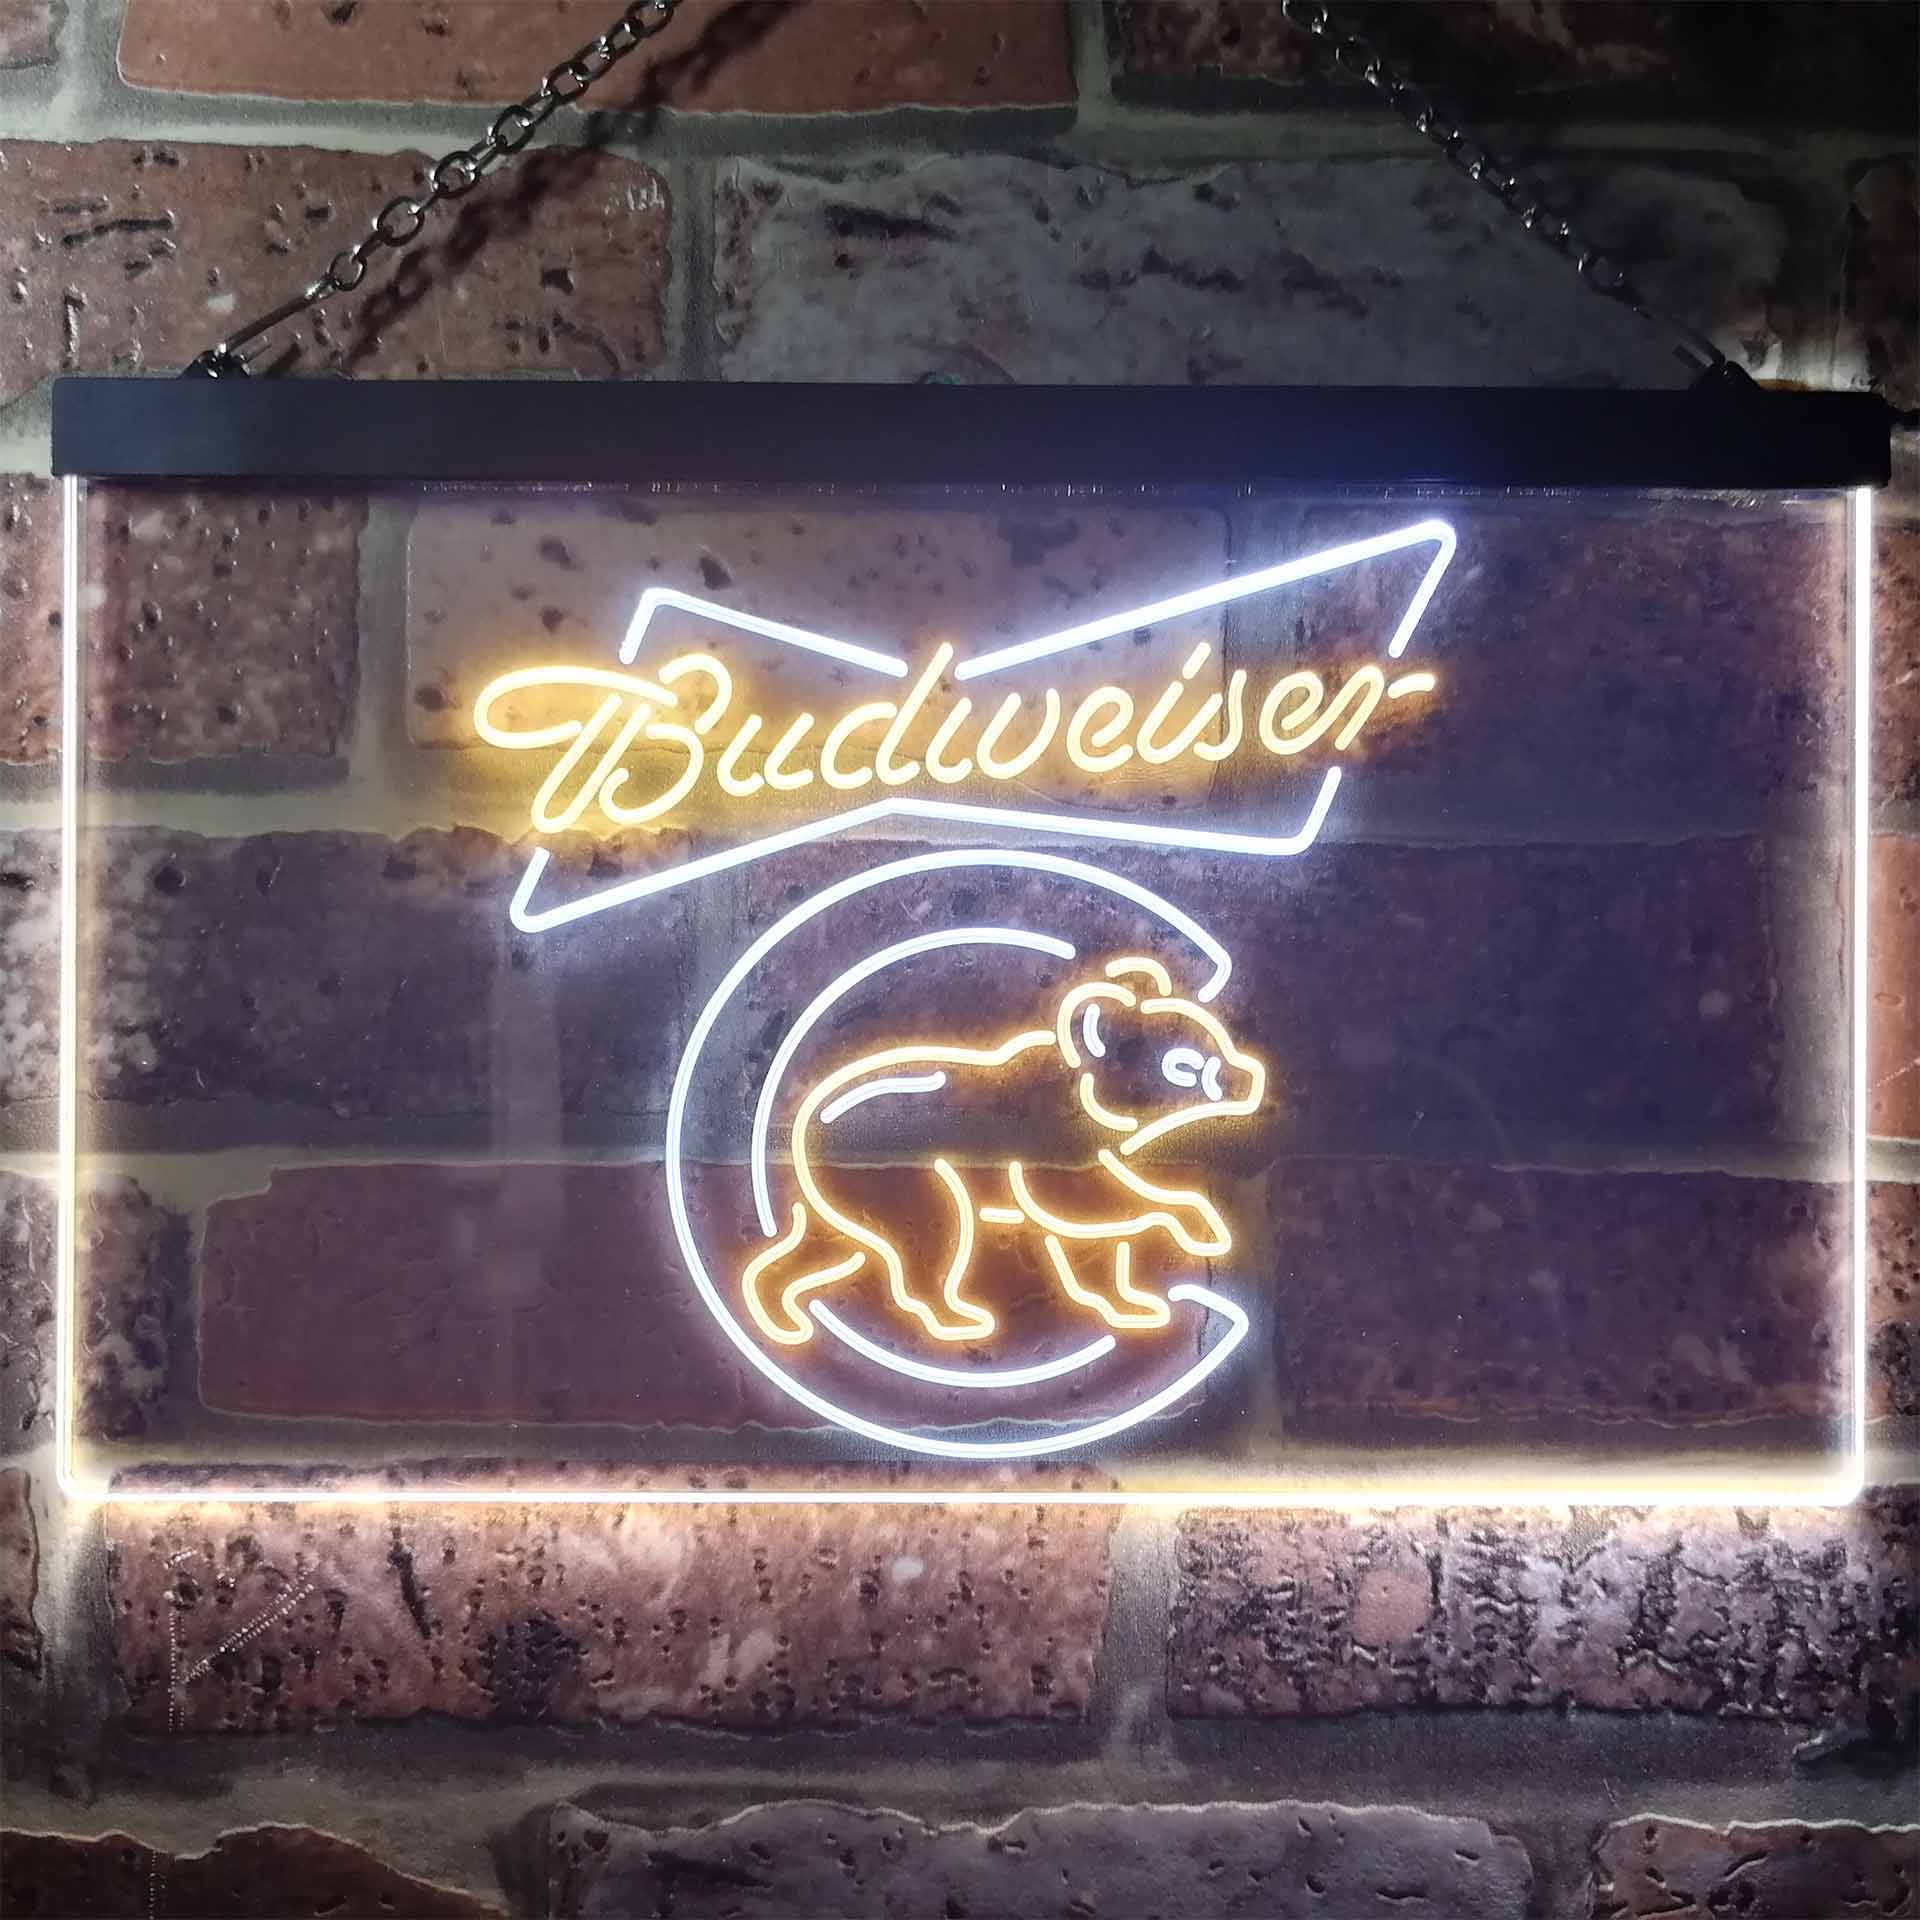 Chicago Bears Budweiser Neon-Like LED Sign